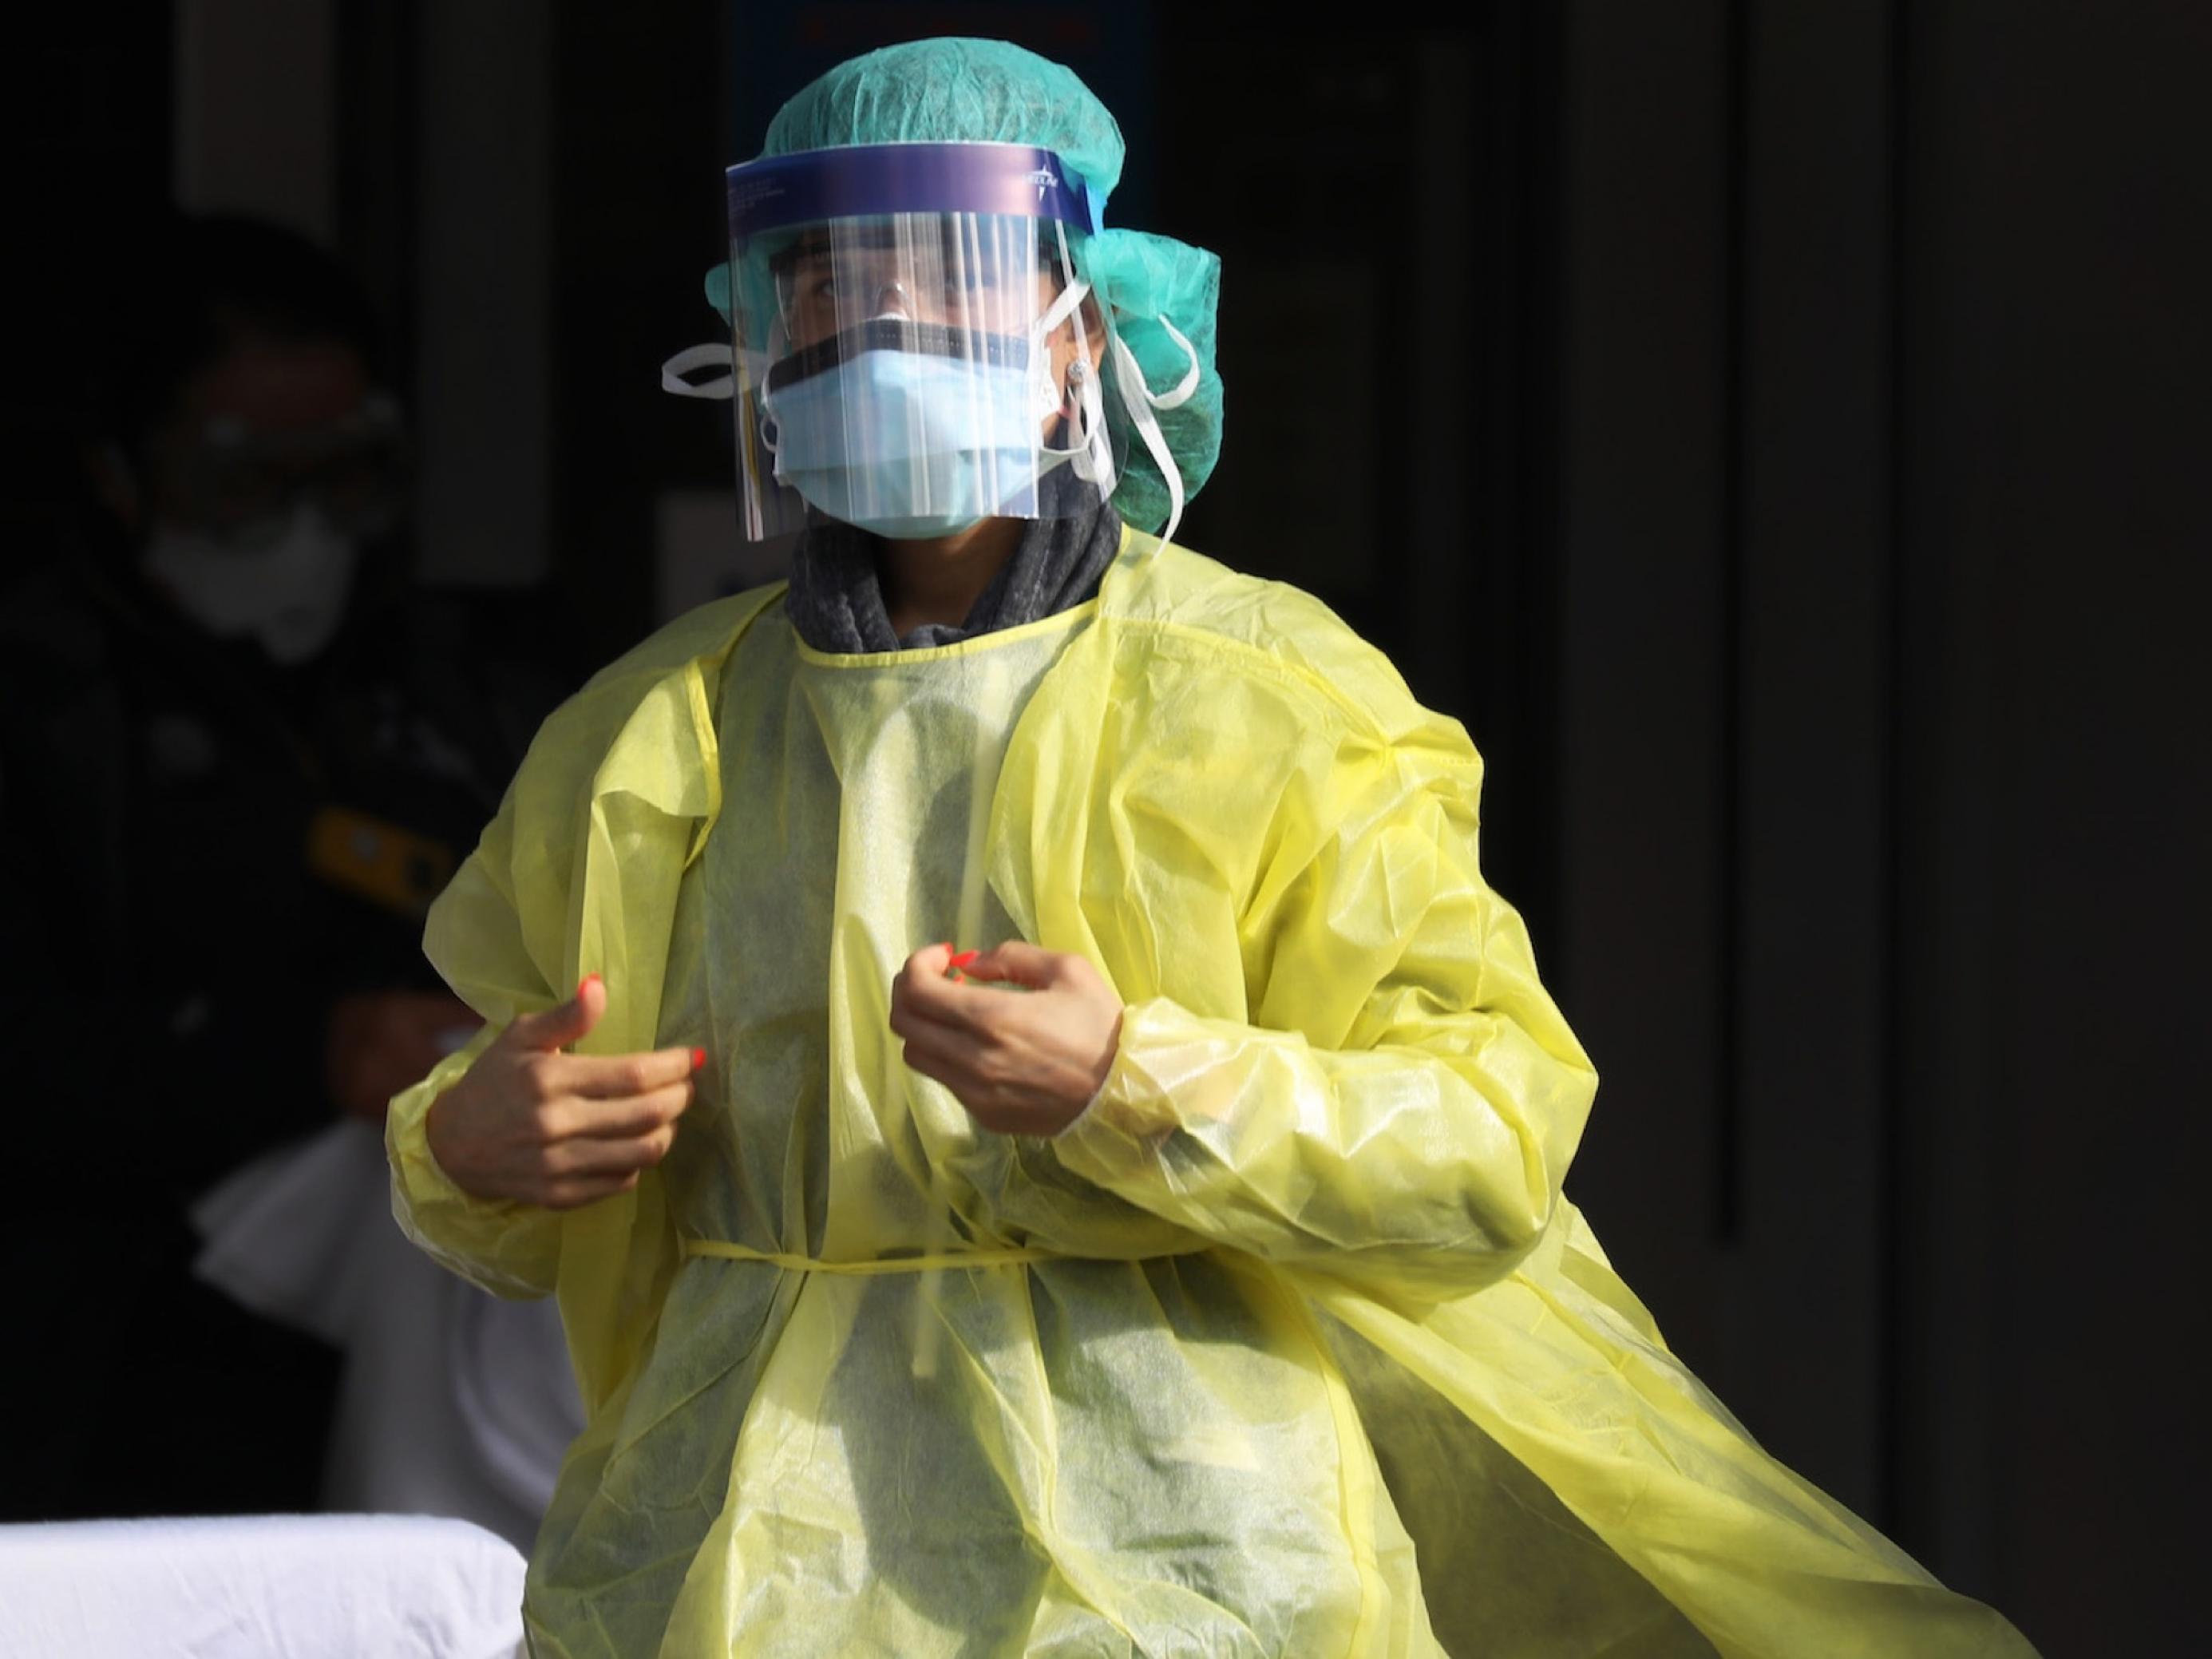 Das Bild zeigt eine Frau, die komplett in medizinische Schutzkleidung aus Plastik gehüllt ist. Man sieht ihre rot lackierten Fingernägel, aber ansonsten wenig. Sie steht vor dem Krankenhaus.